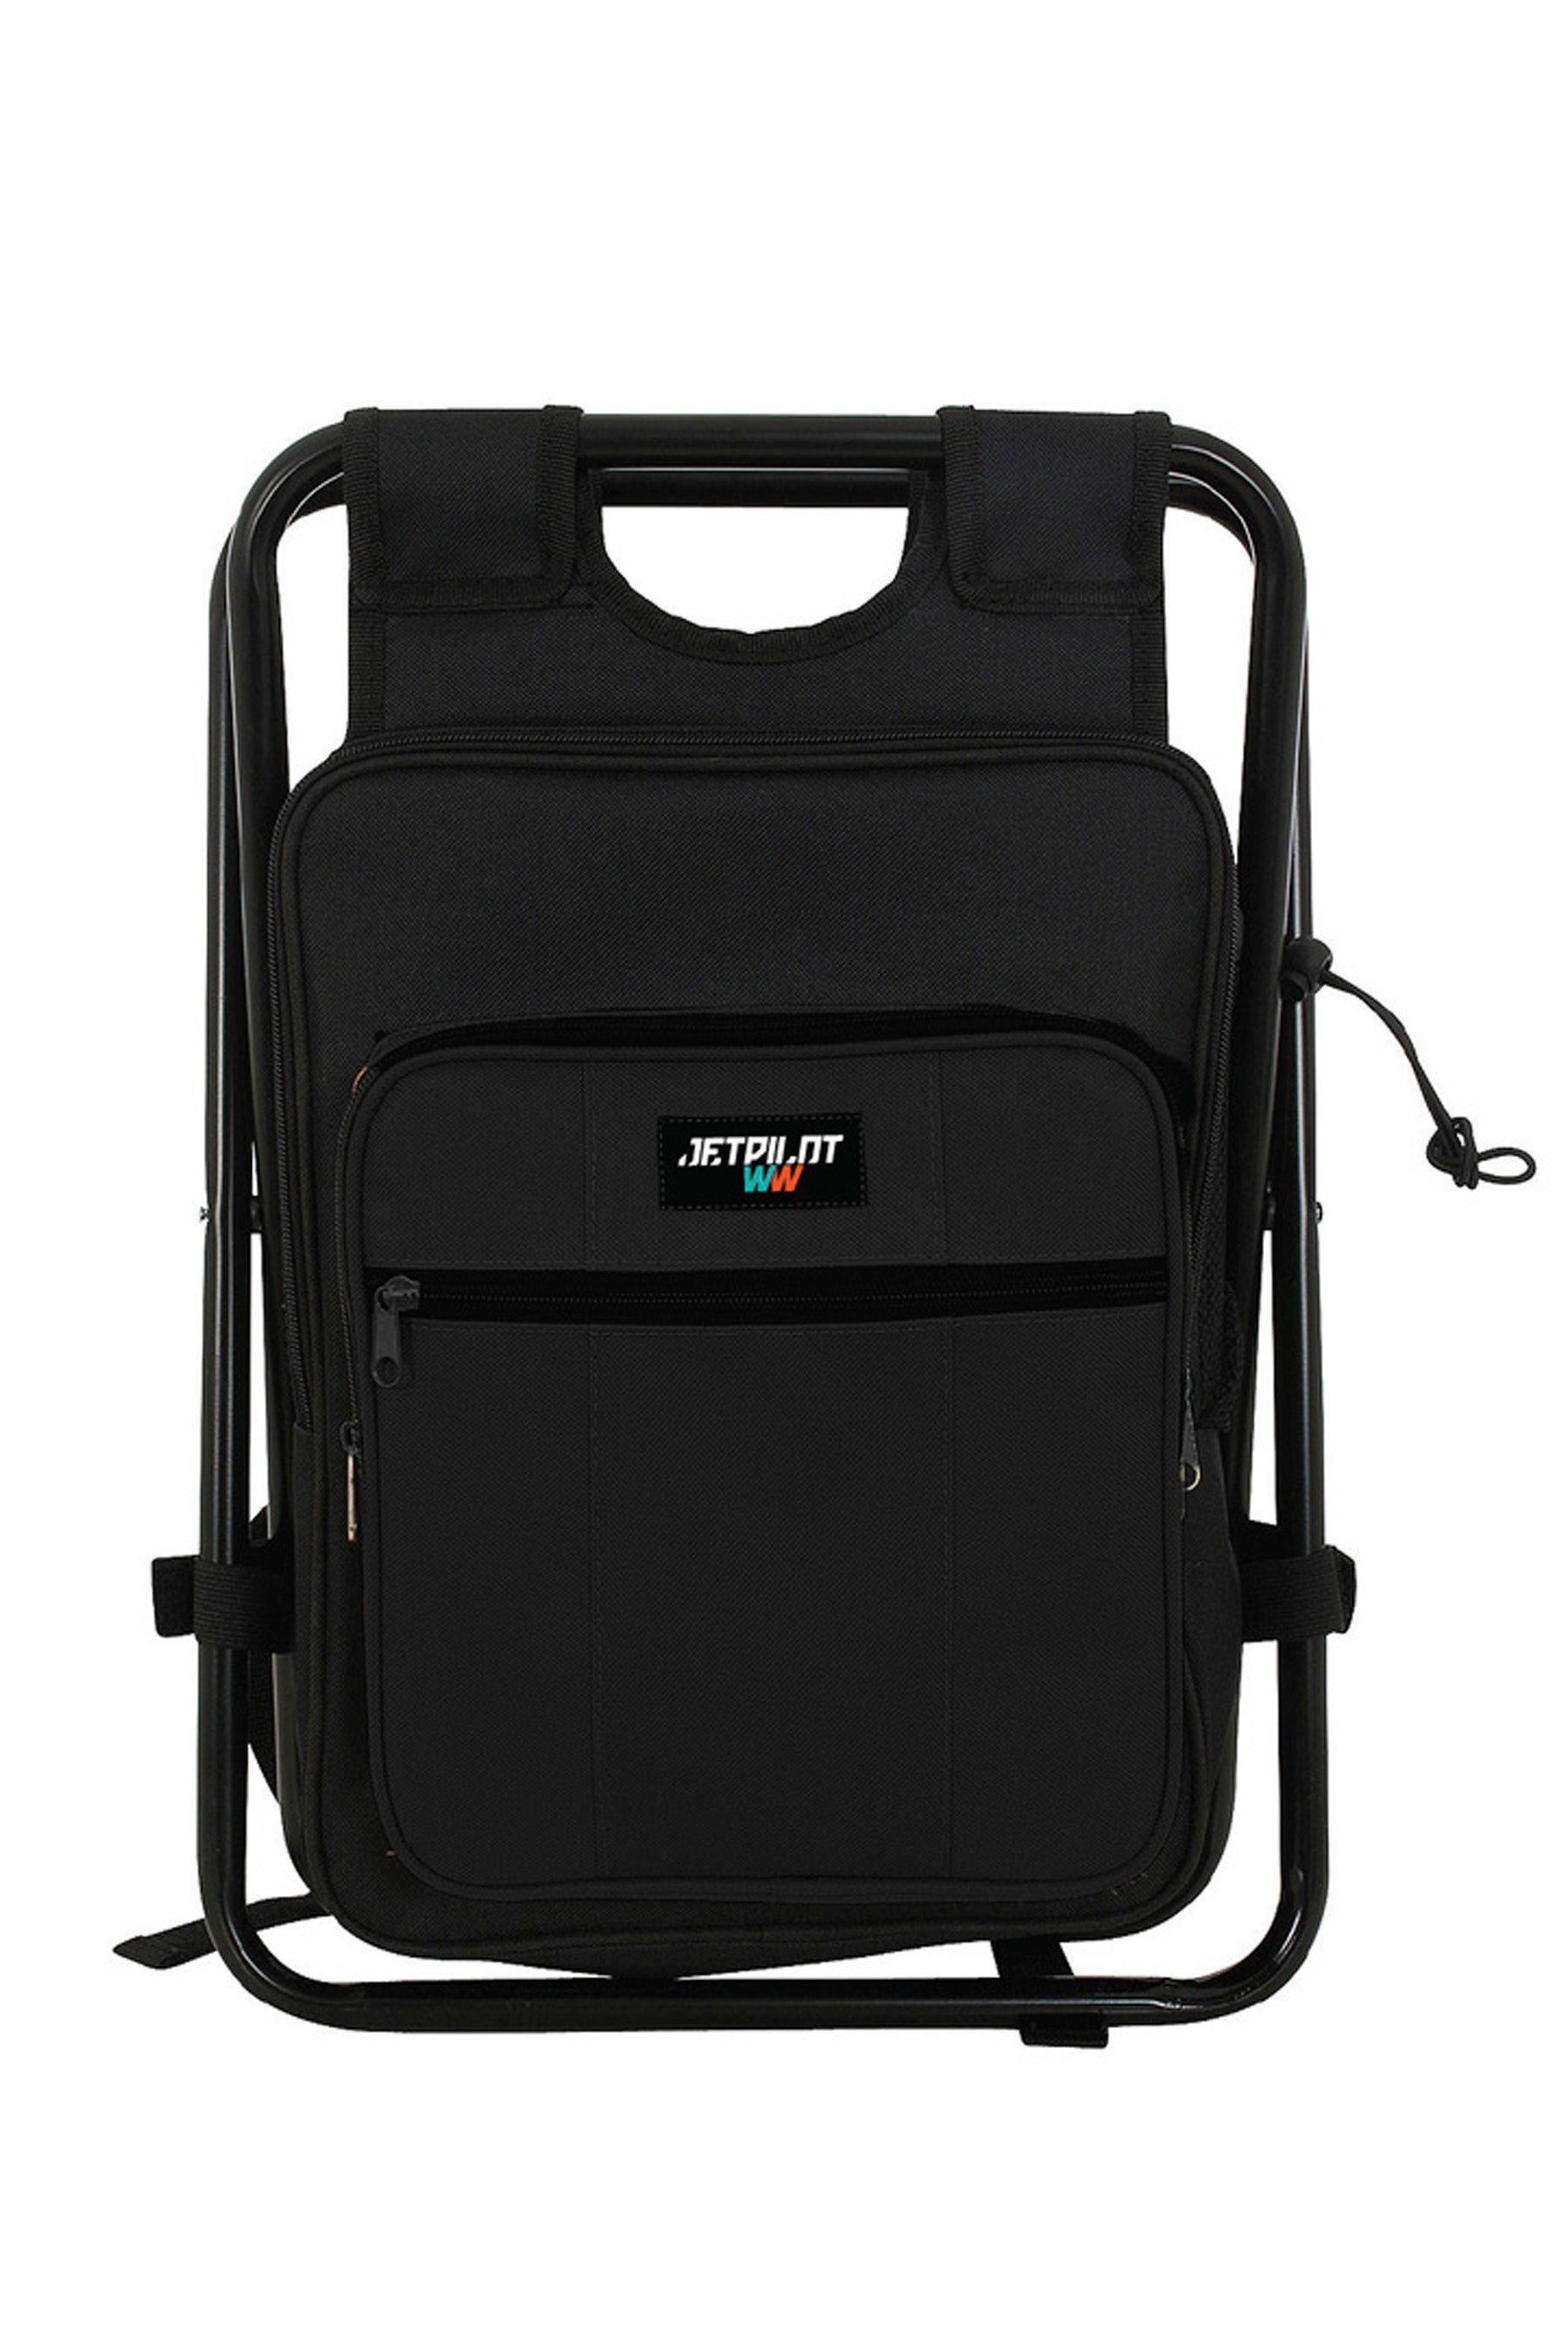 Jetpilot Chilled Seat Bag - Black